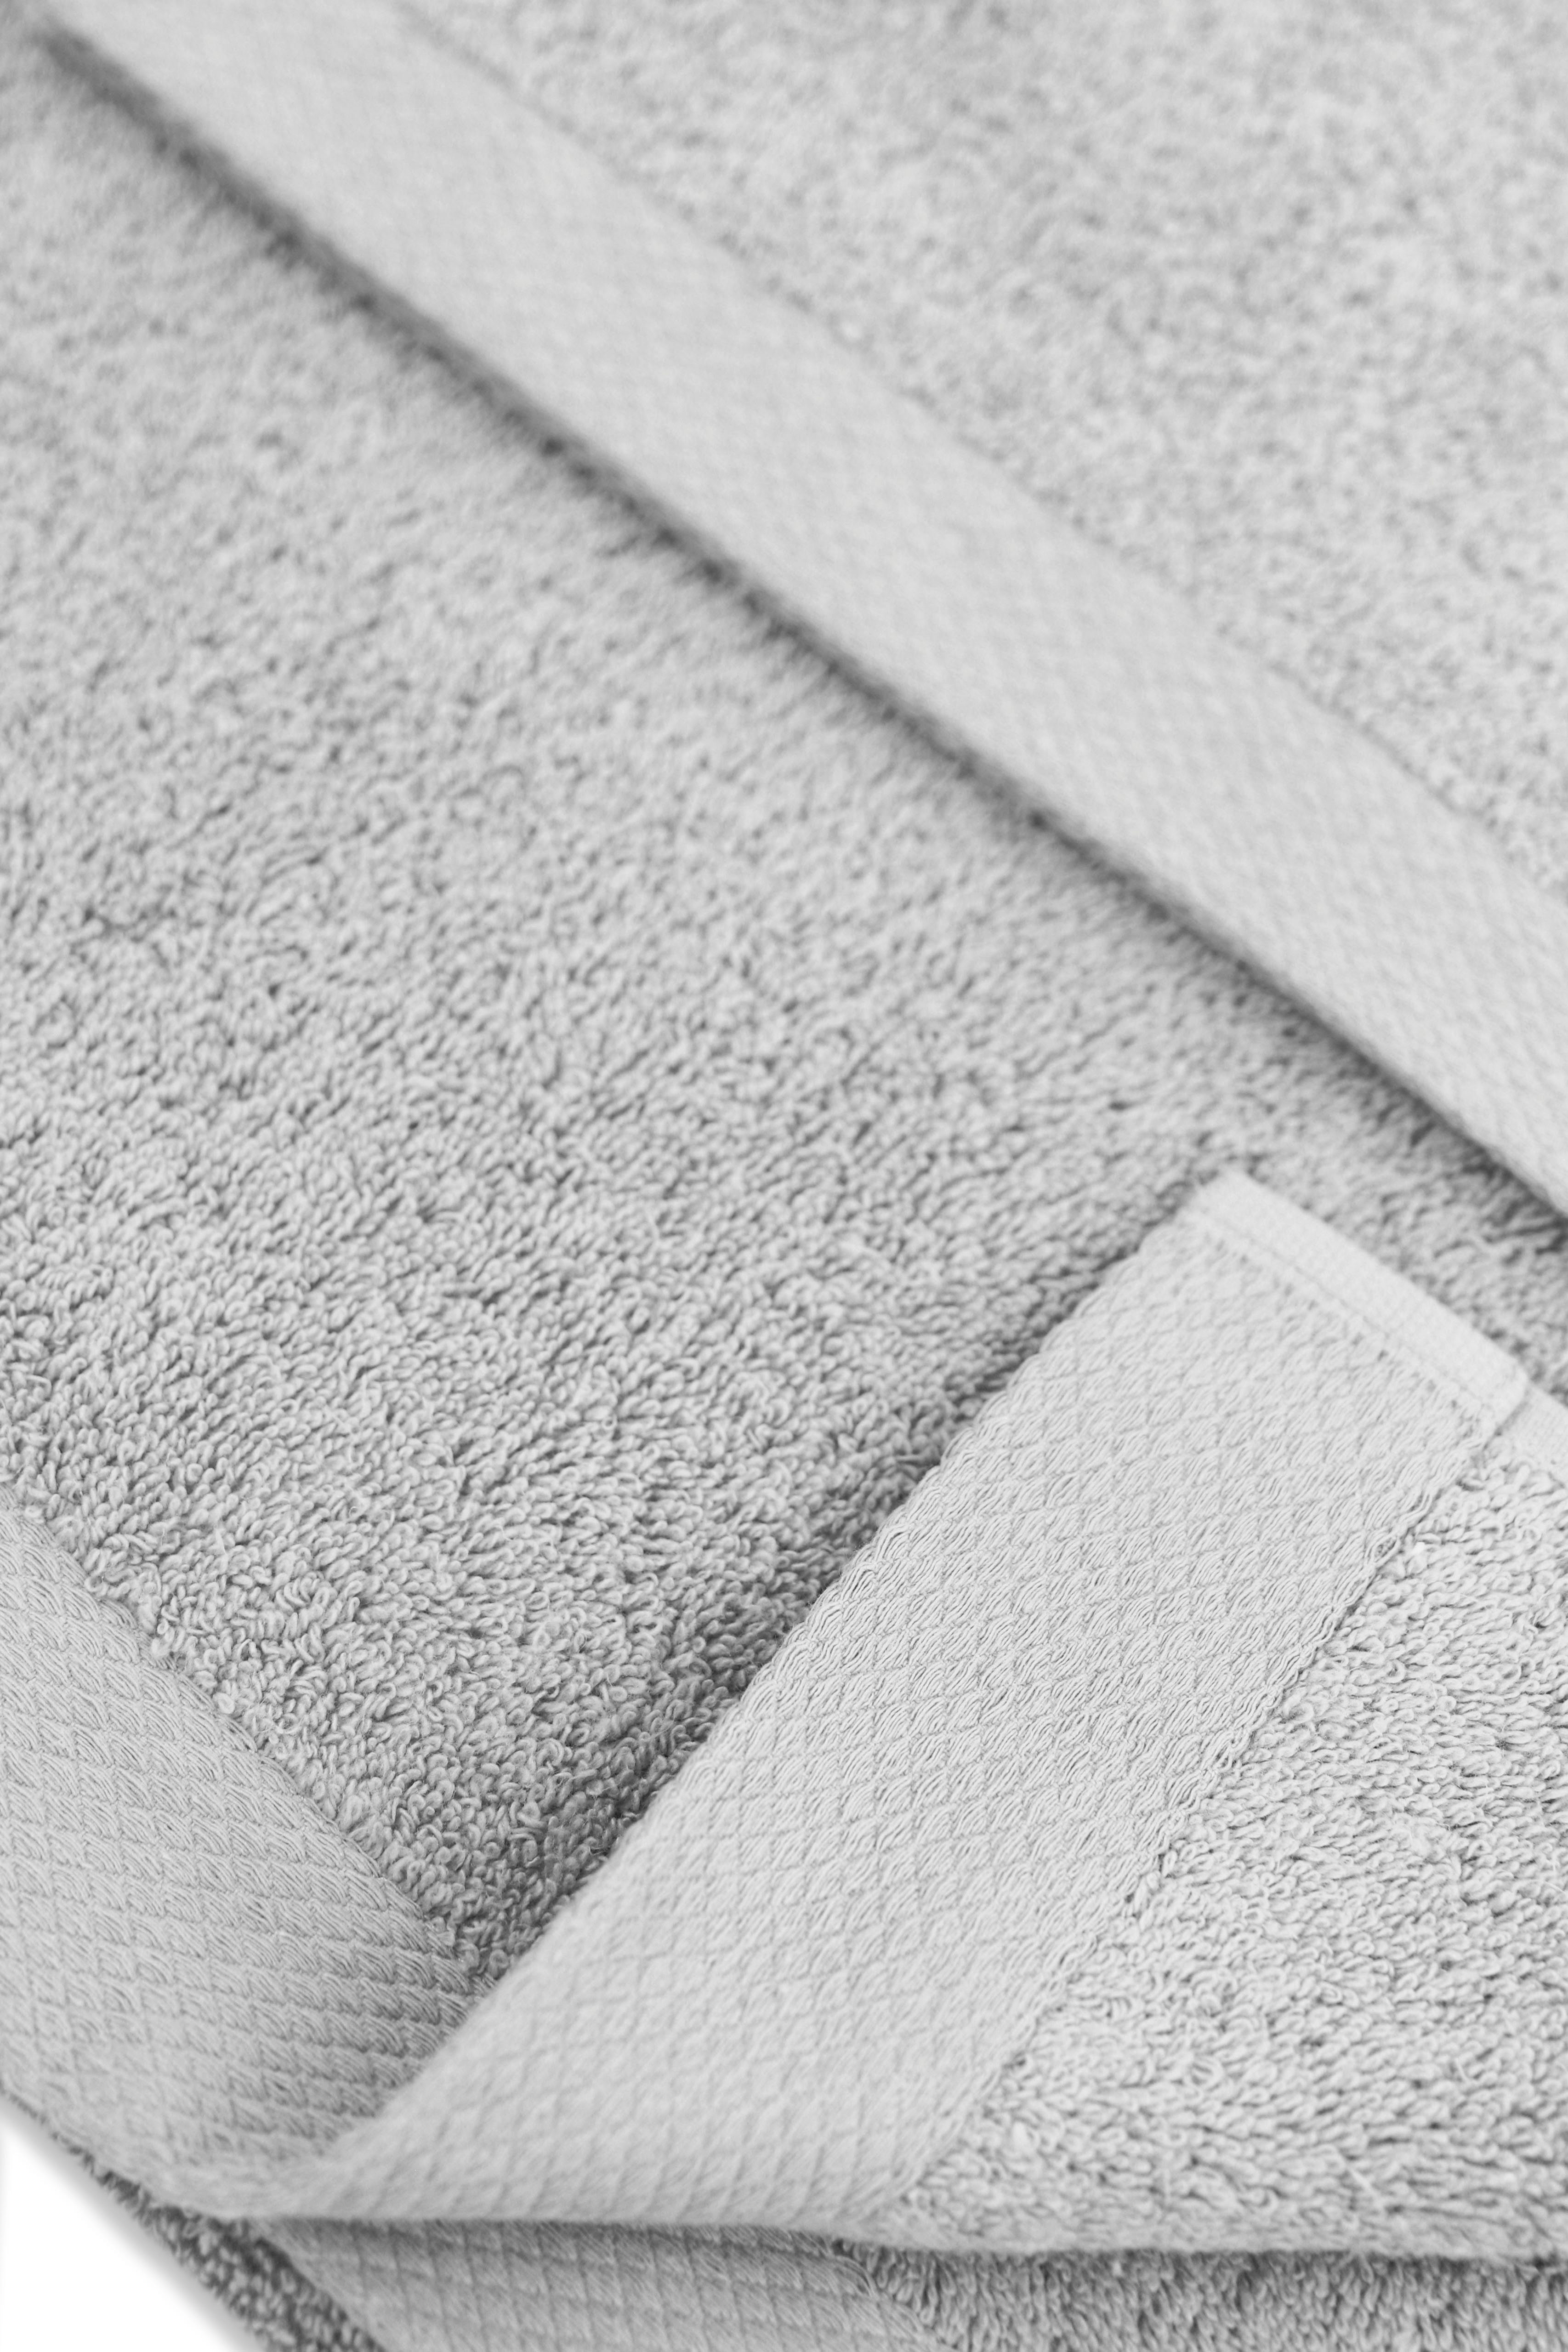 Leonique Handtuch Set 600gr/m² Frottee, Premium hellgrau Duschtuch, aus Gästetuch (3-tlg), »Tailles« Bio-Baumwolle flauschige Handtuch, Hotel-Qualität